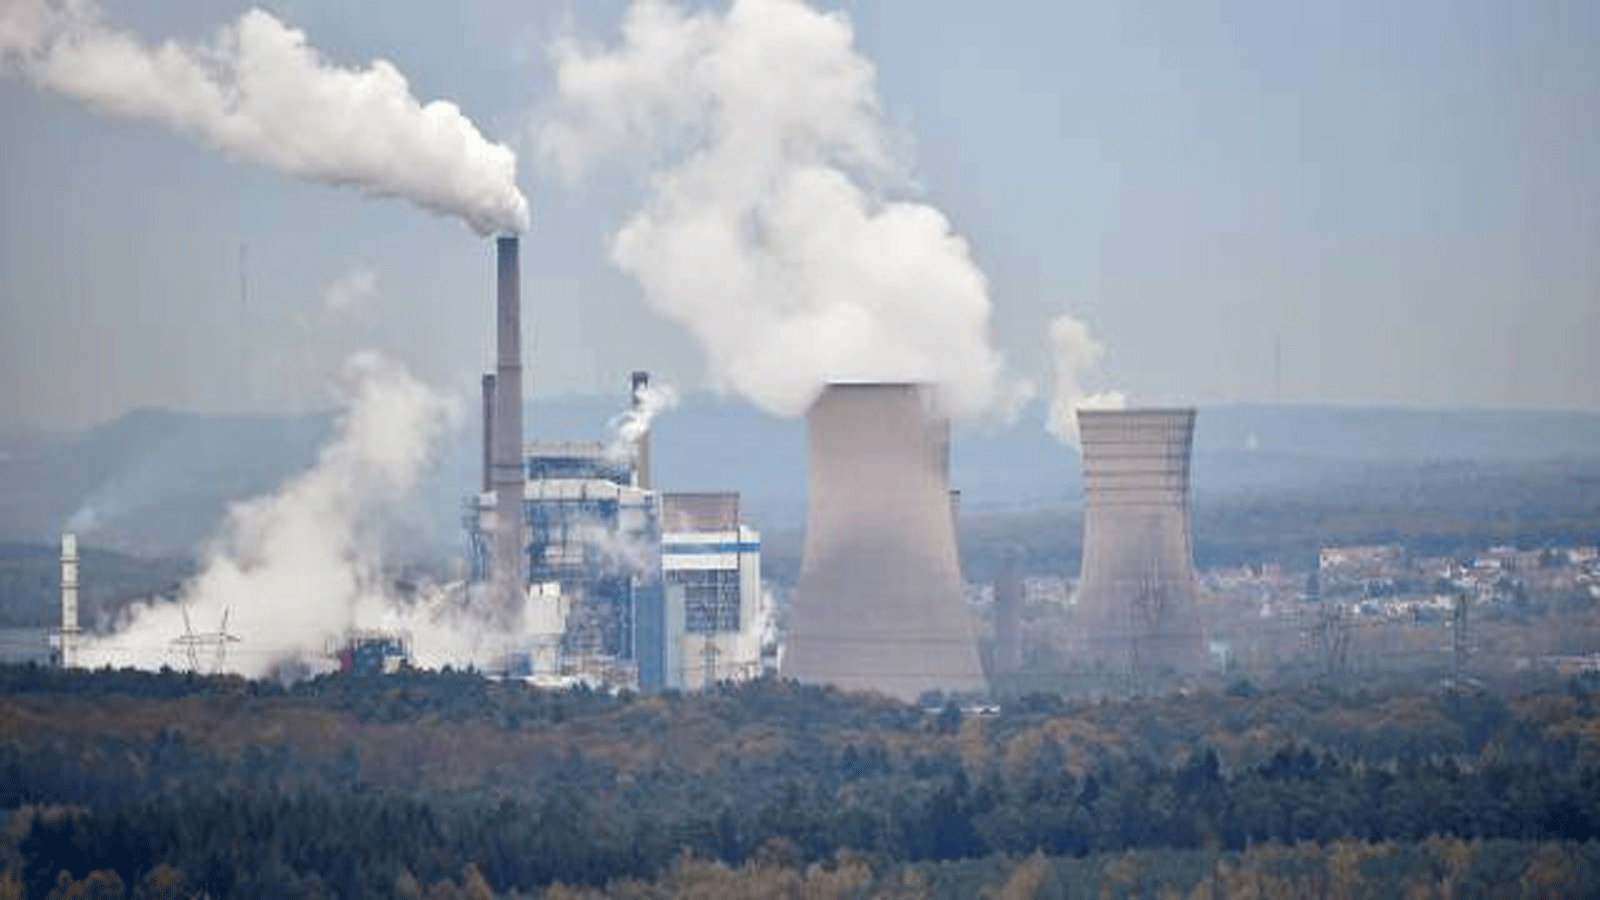 الحكومة الفرنسية ستعيد تشغيل محطة الطاقة التي تعمل بالفحم في Saint-Avold في الشتاء المقبل